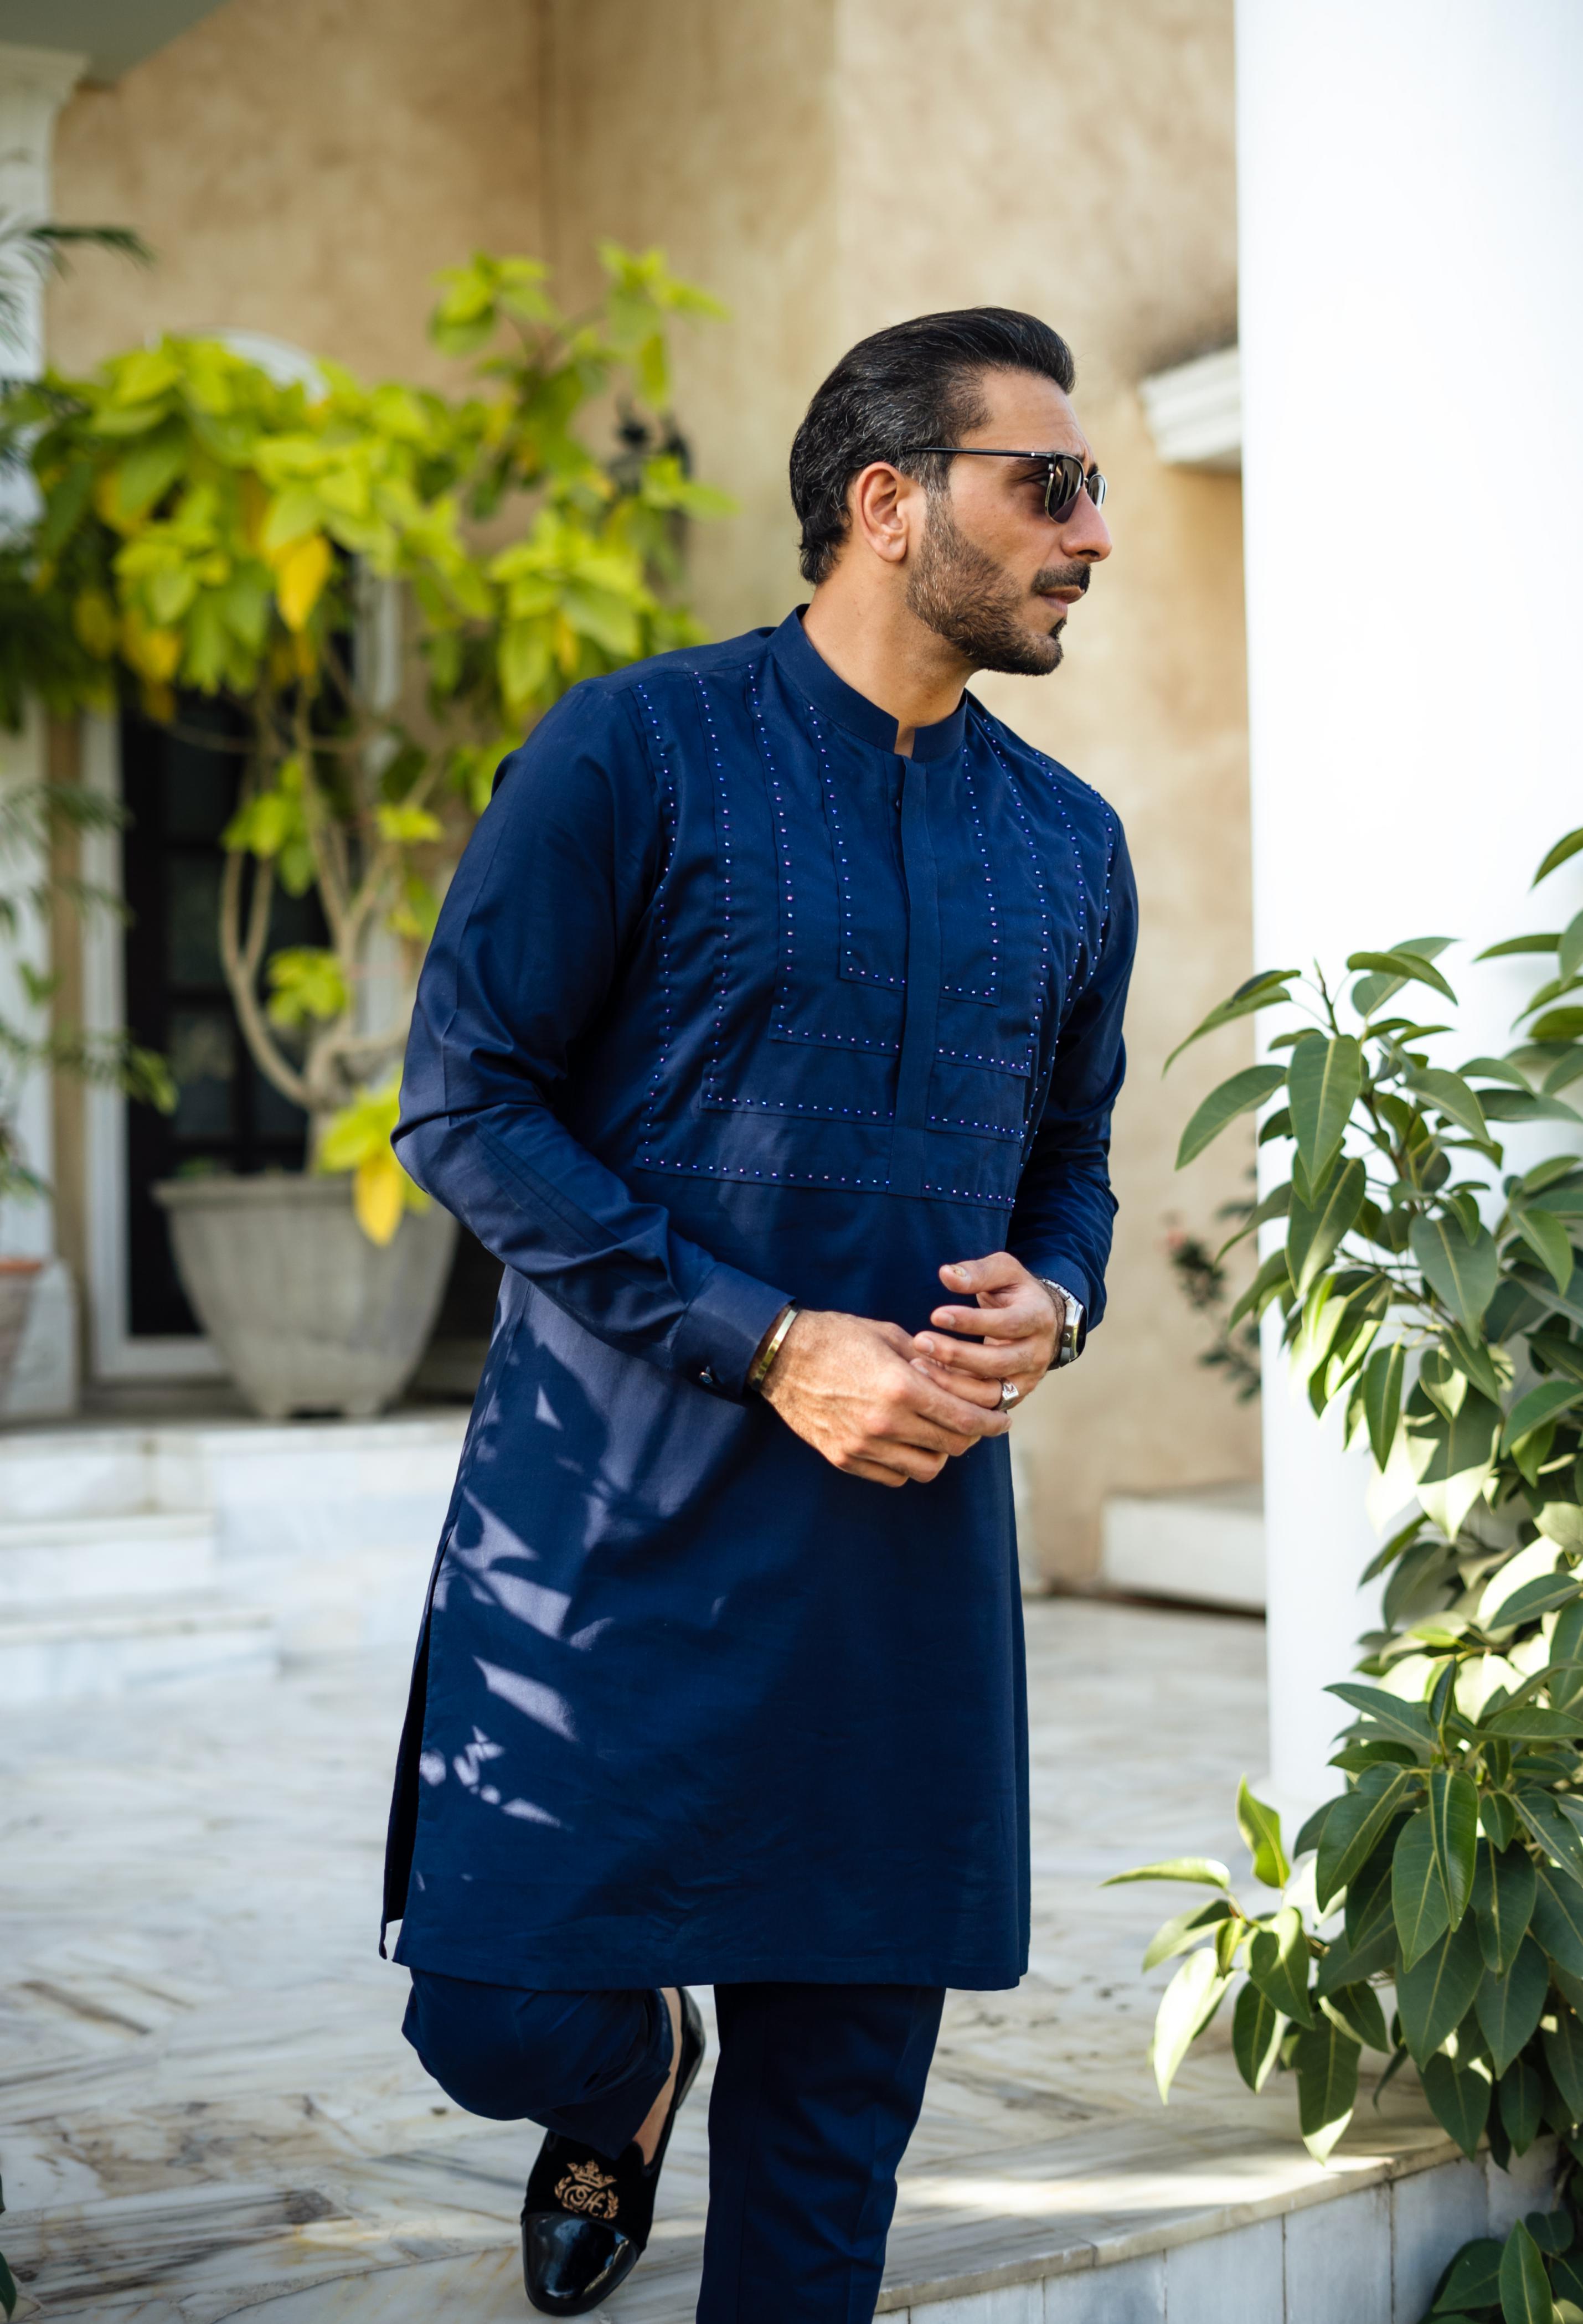 Party Wear: Buy Indian Party Wear for Men in Latest Designs | Utsav Fashion